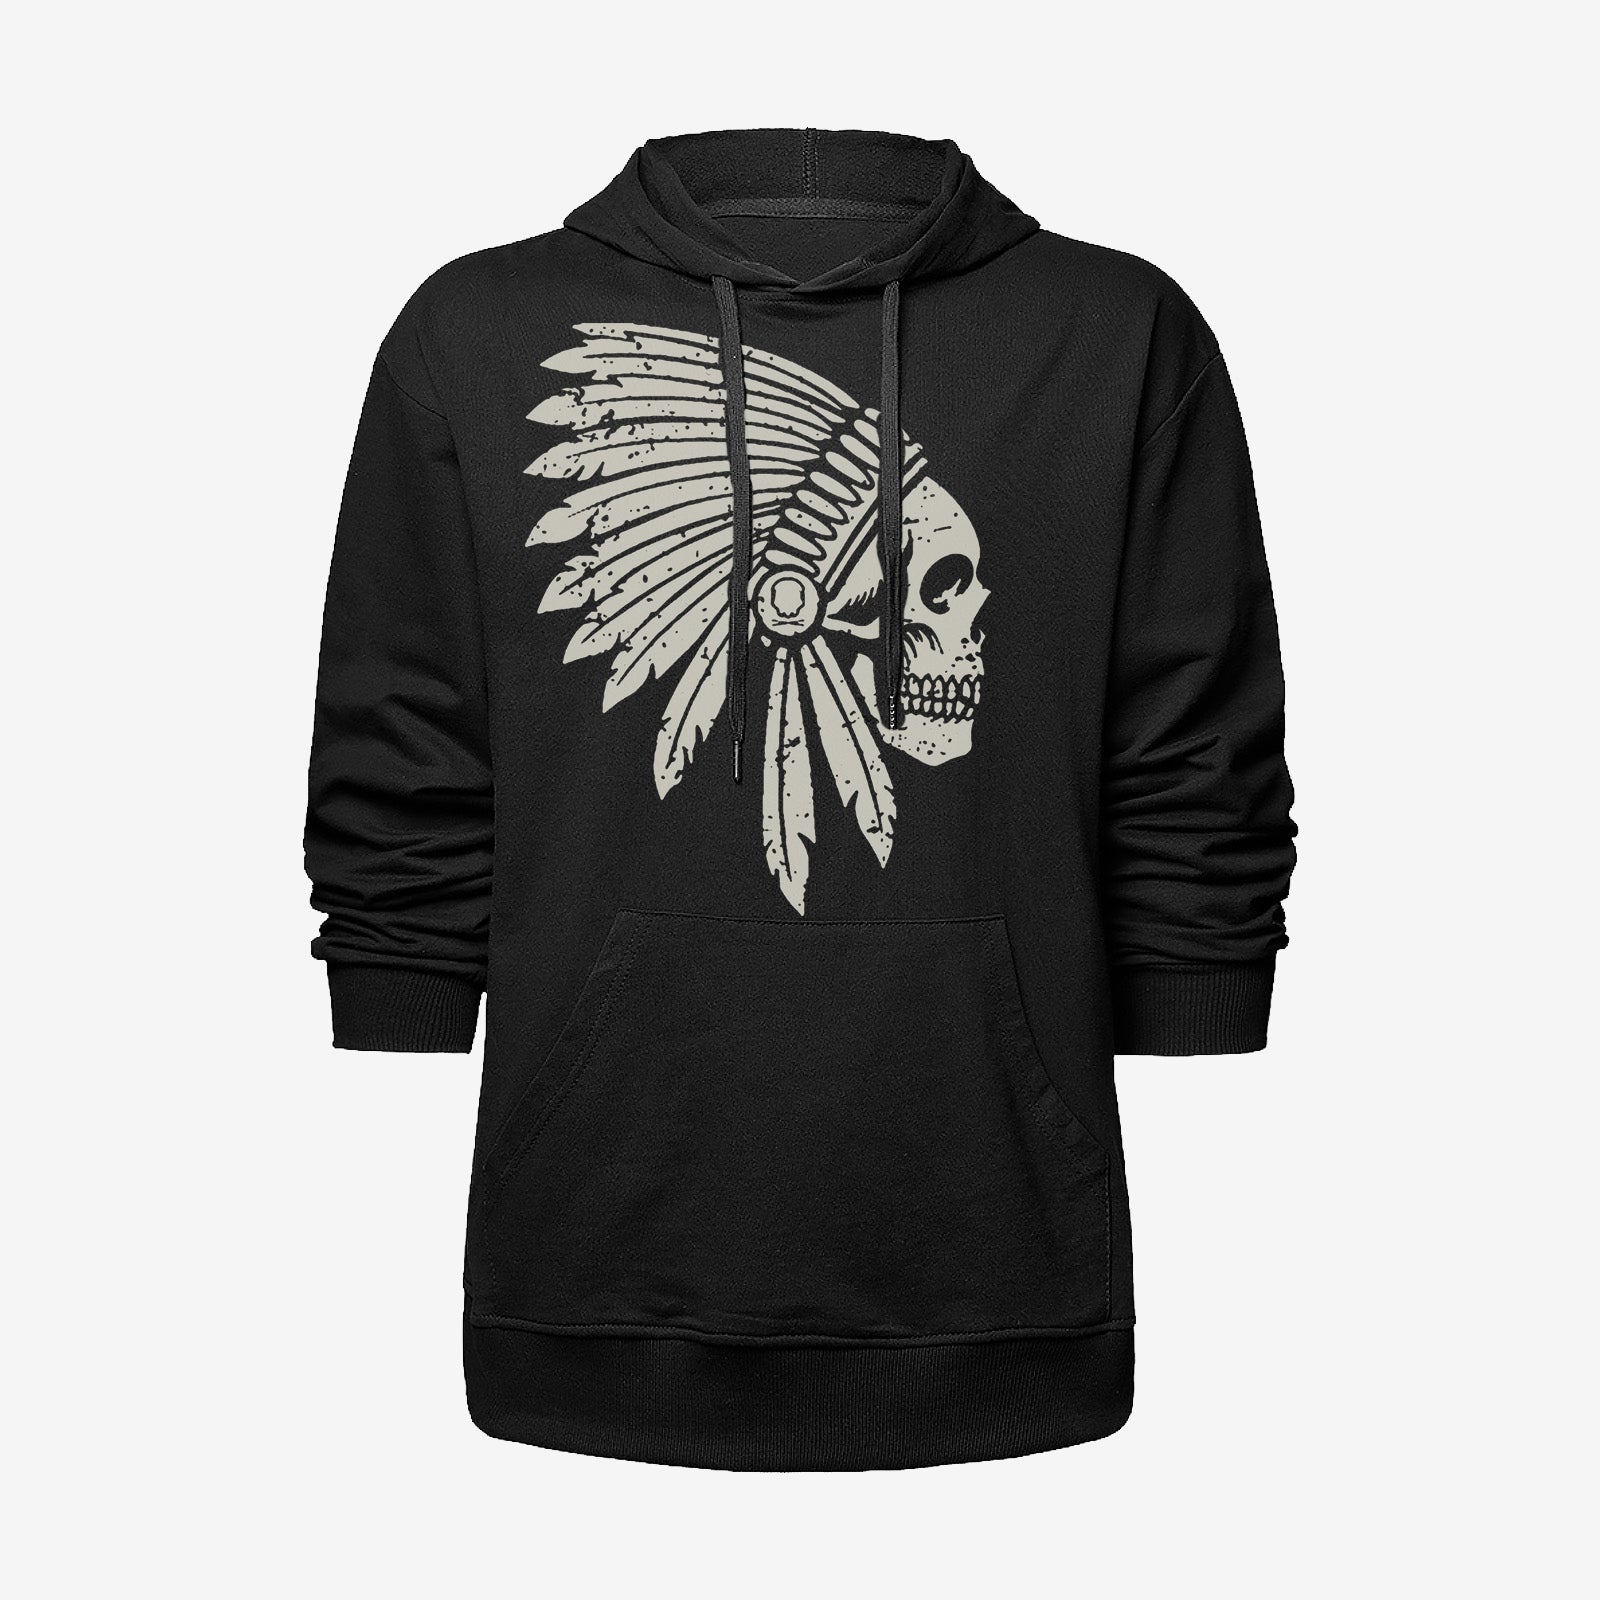 Livereid Black Skull Print Black Hooded Sweatshirt - Chicyea